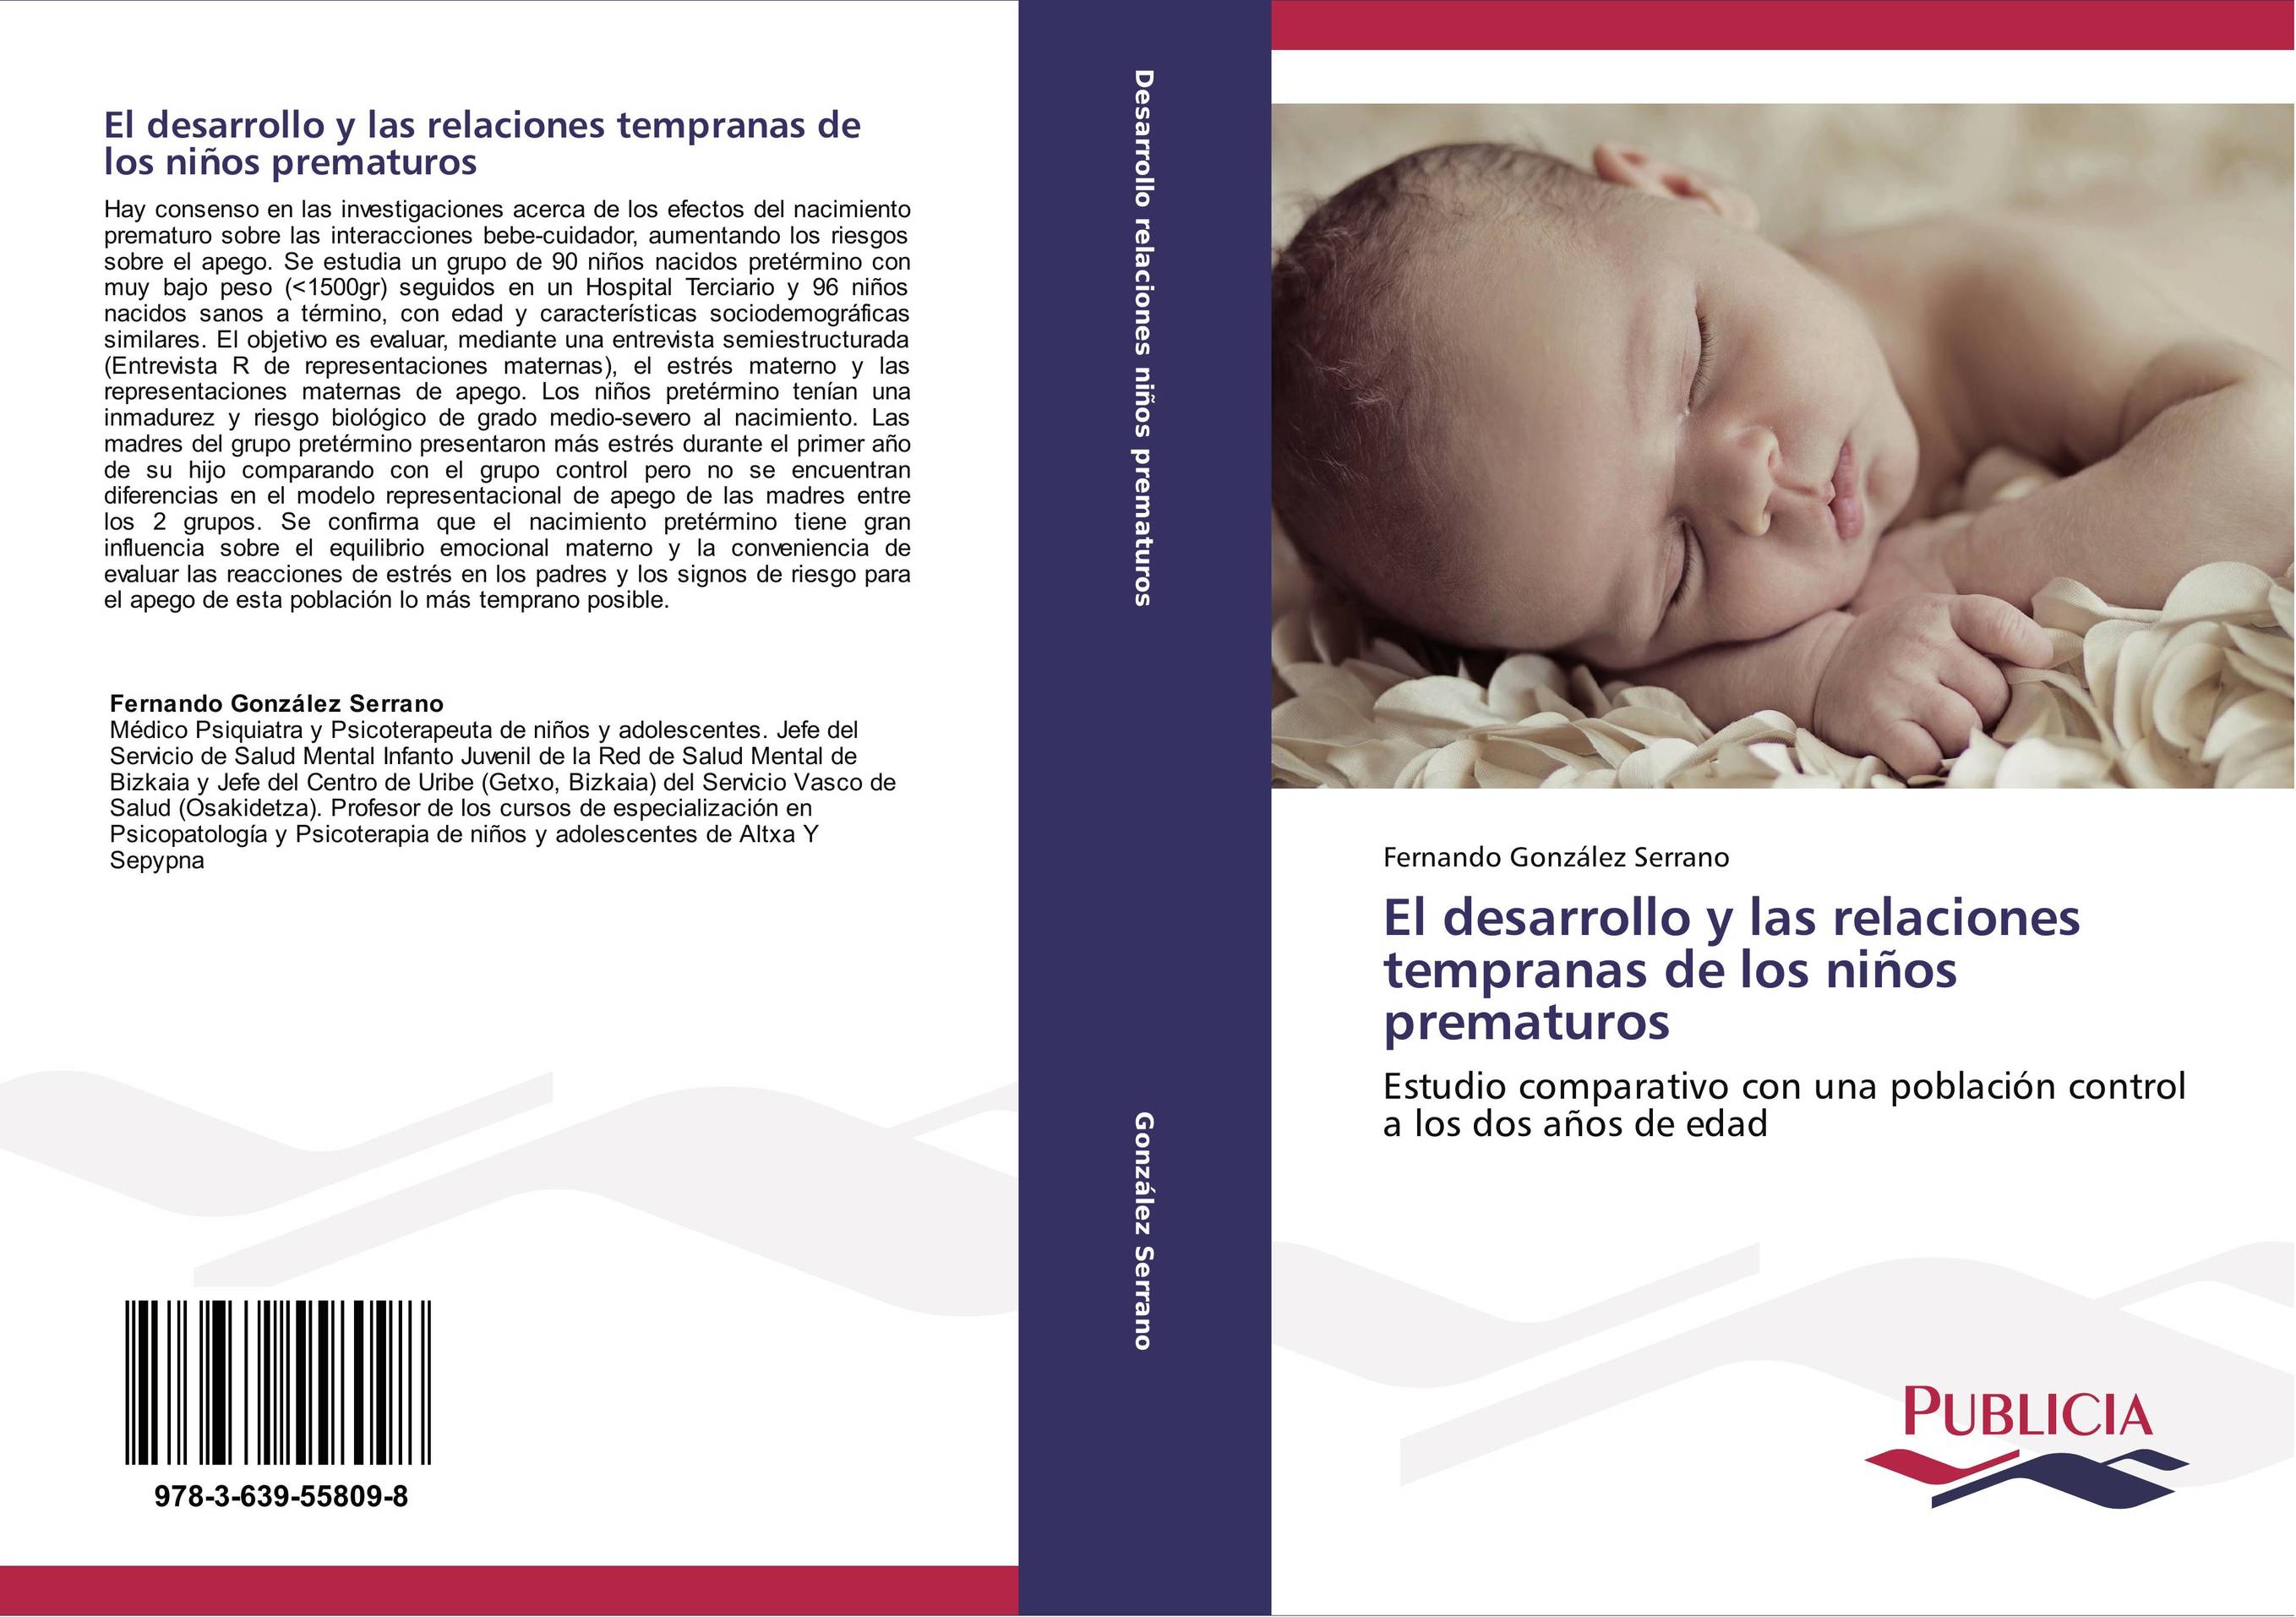 El desarrollo y las relaciones tempranas de los niños prematuros